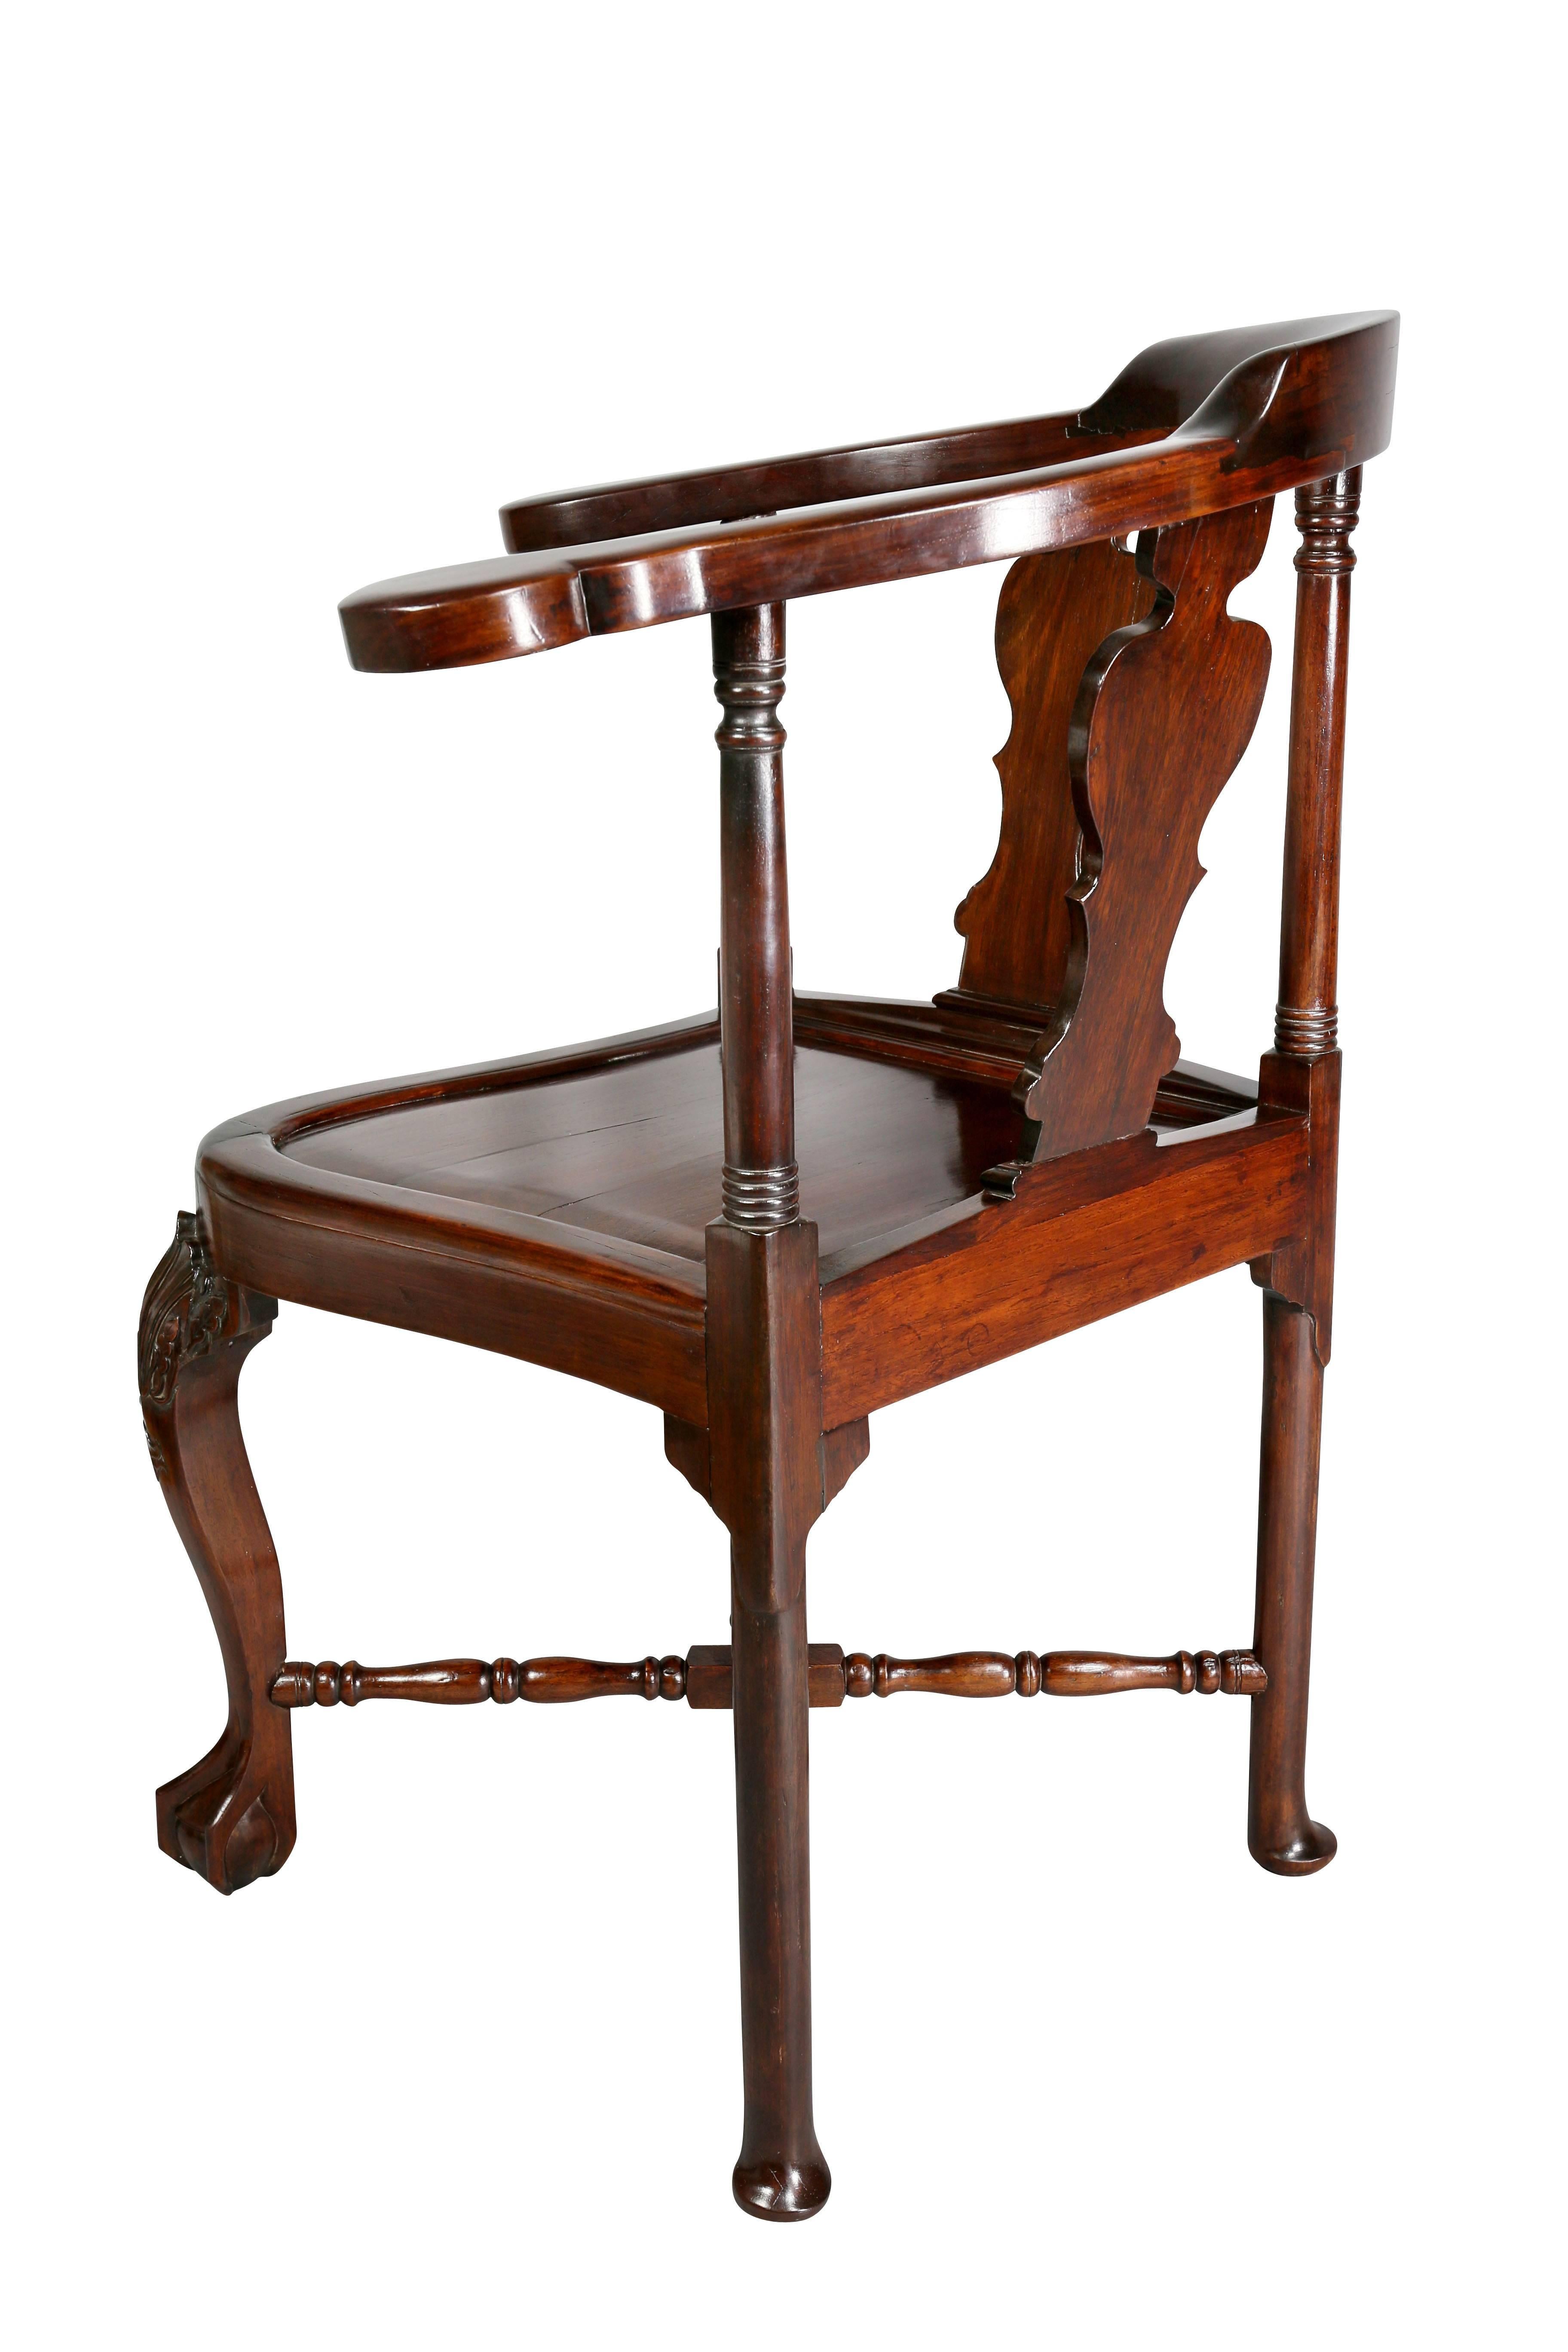 Chinese Export Hardwood Corner Chair 1